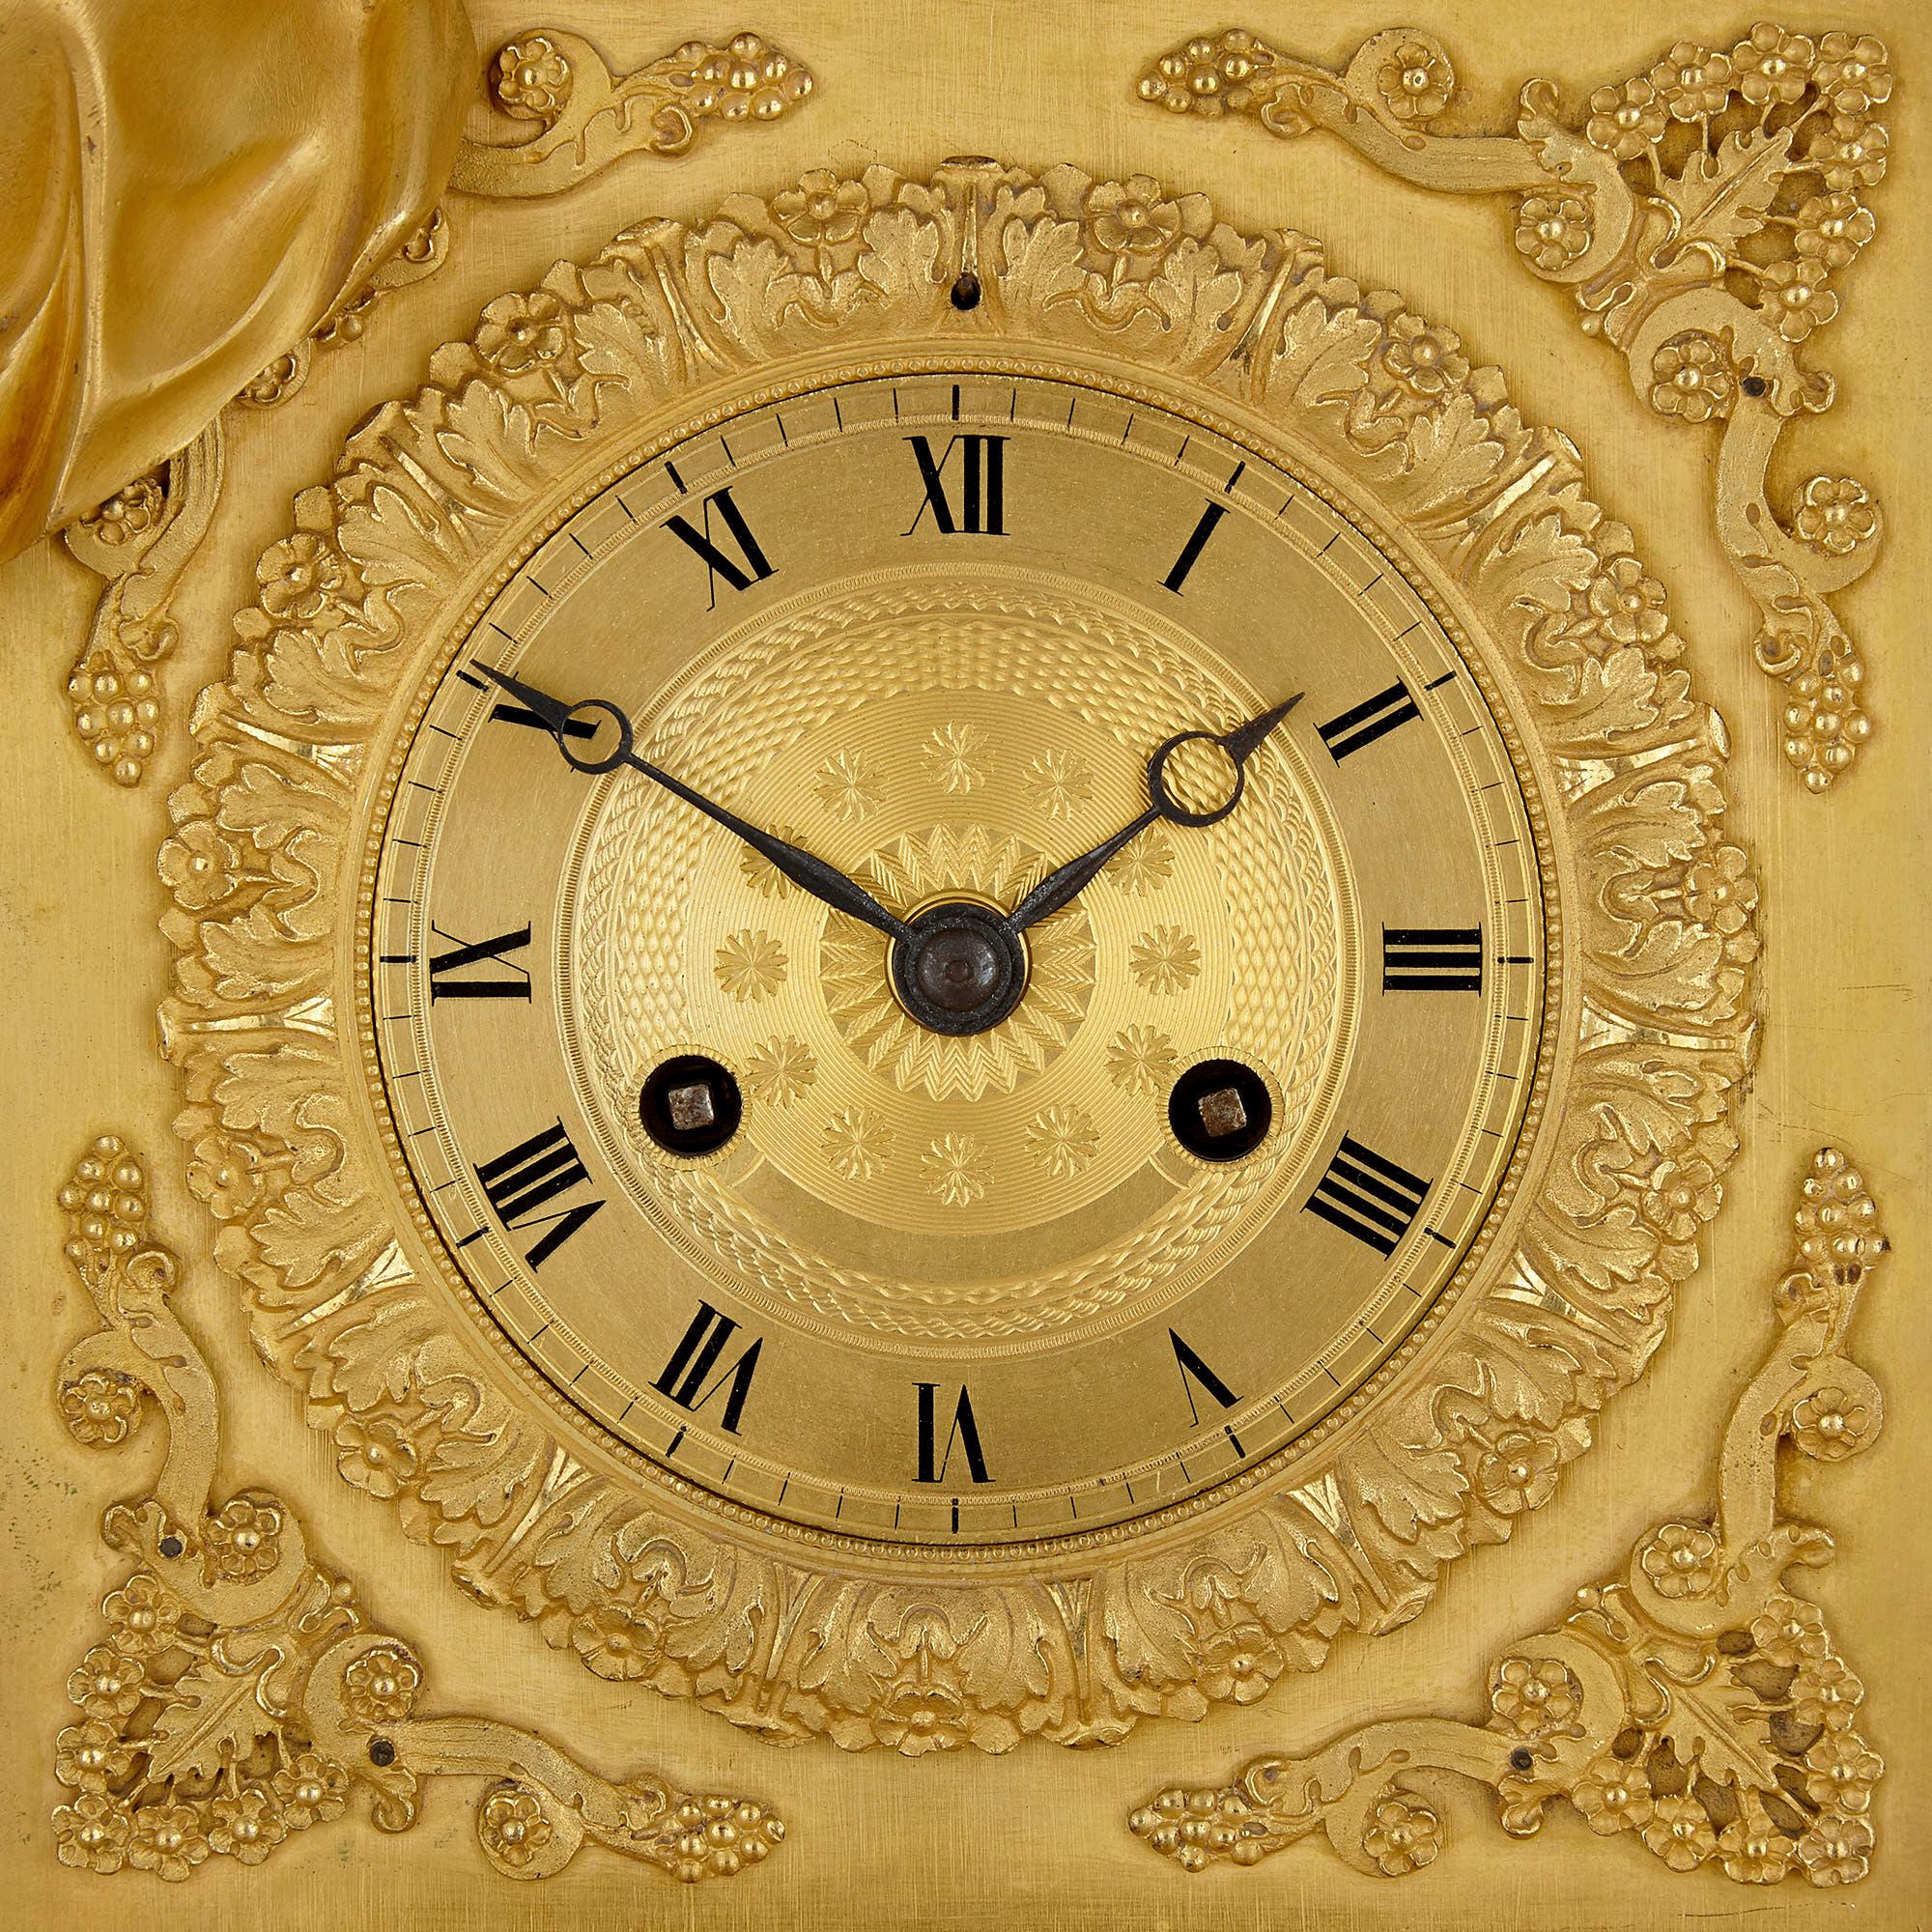 Französisch Empire vergoldete Bronze Kaminsimsuhr mit Venus und Amor
Französisch, frühes 19. Jahrhundert
Maße: Höhe 53cm, Breite 37,5cm, Tiefe 13,5cm

Diese feine Empire-Stiluhr ist aus vergoldeter Bronze gefertigt. Auf der Uhr ist eine Skulptur